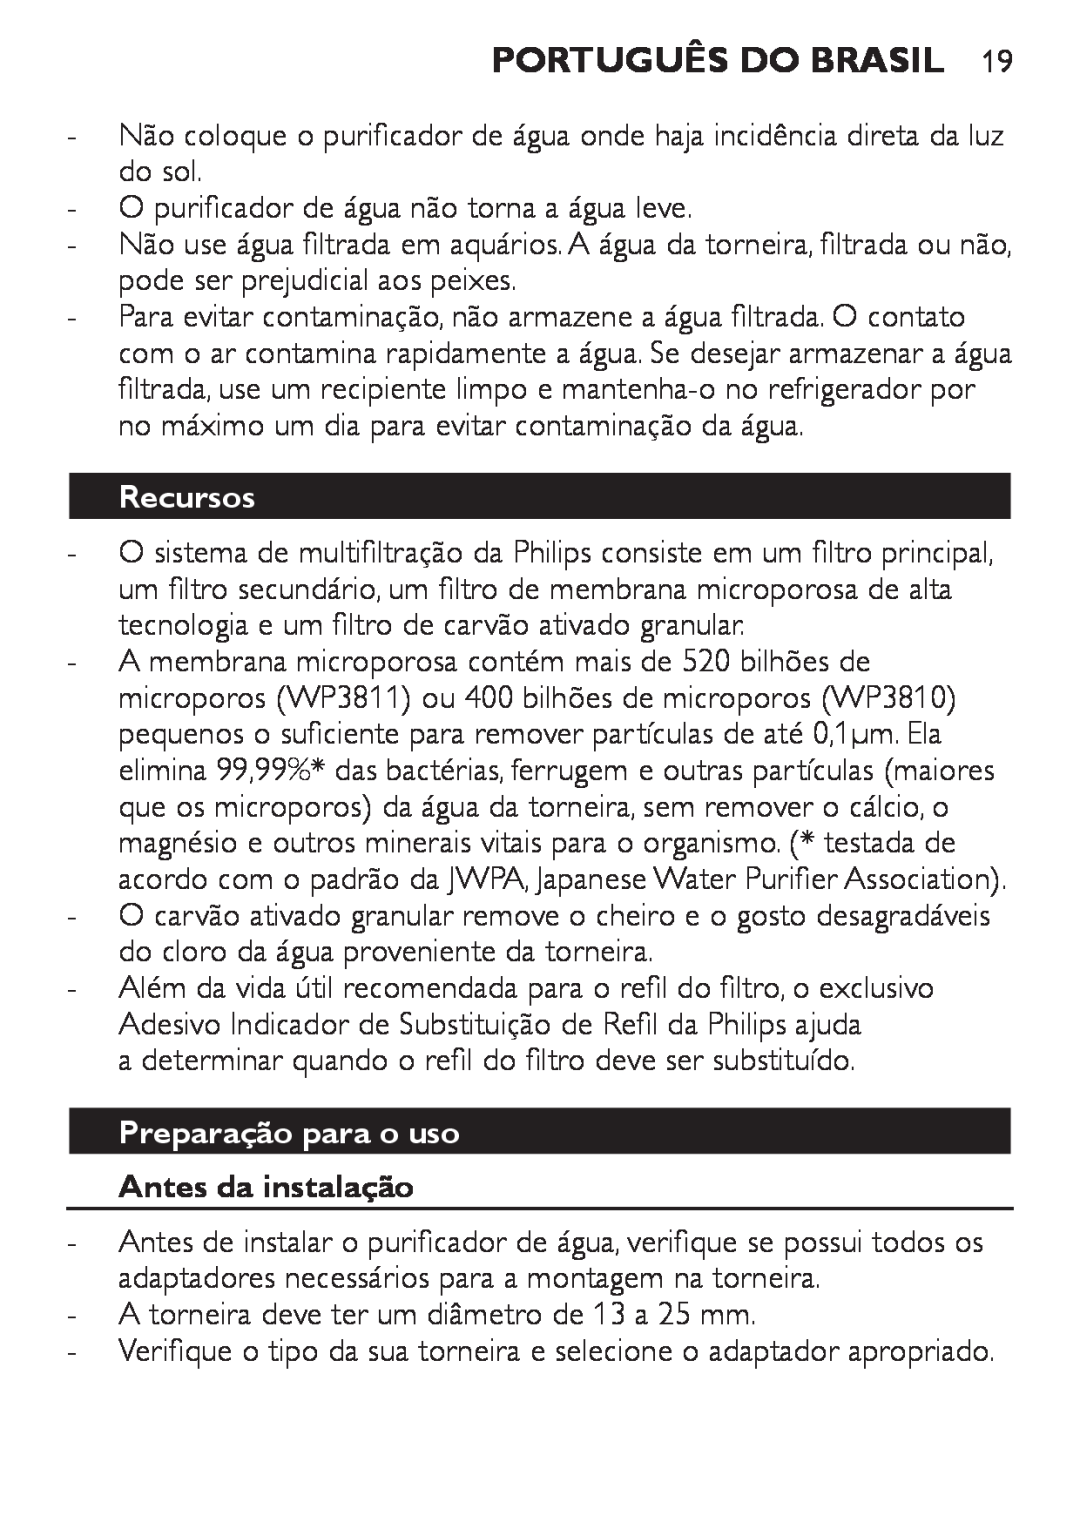 Philips WP3811, WP3810 manual Português do Brasil, Recursos, Preparação para o uso Antes da instalação 